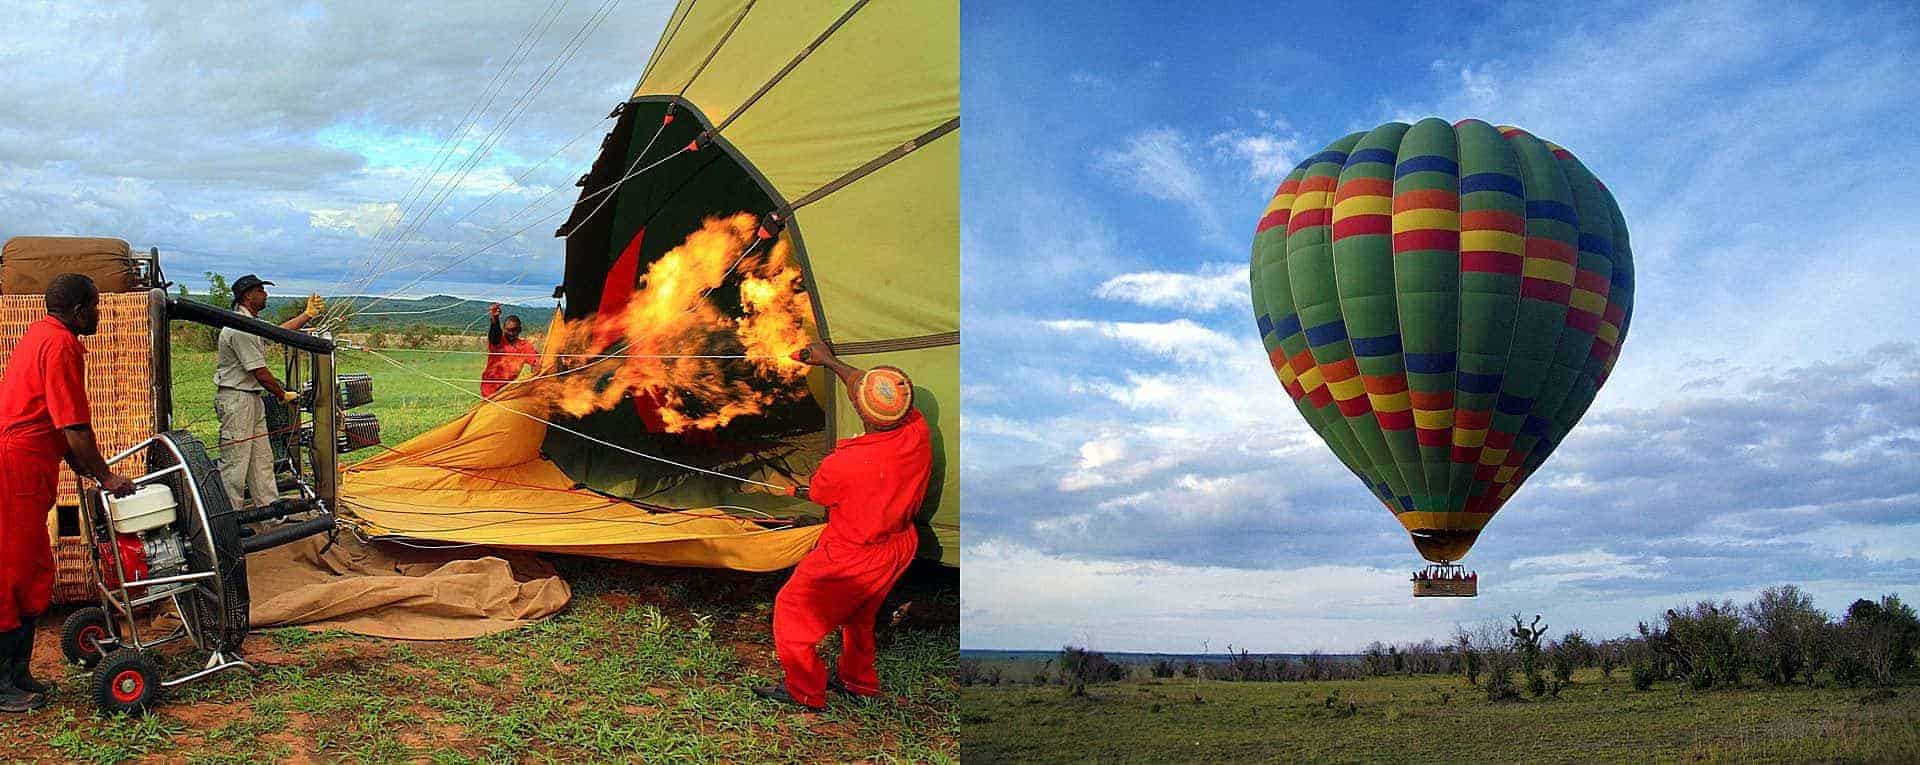 balloon safari location